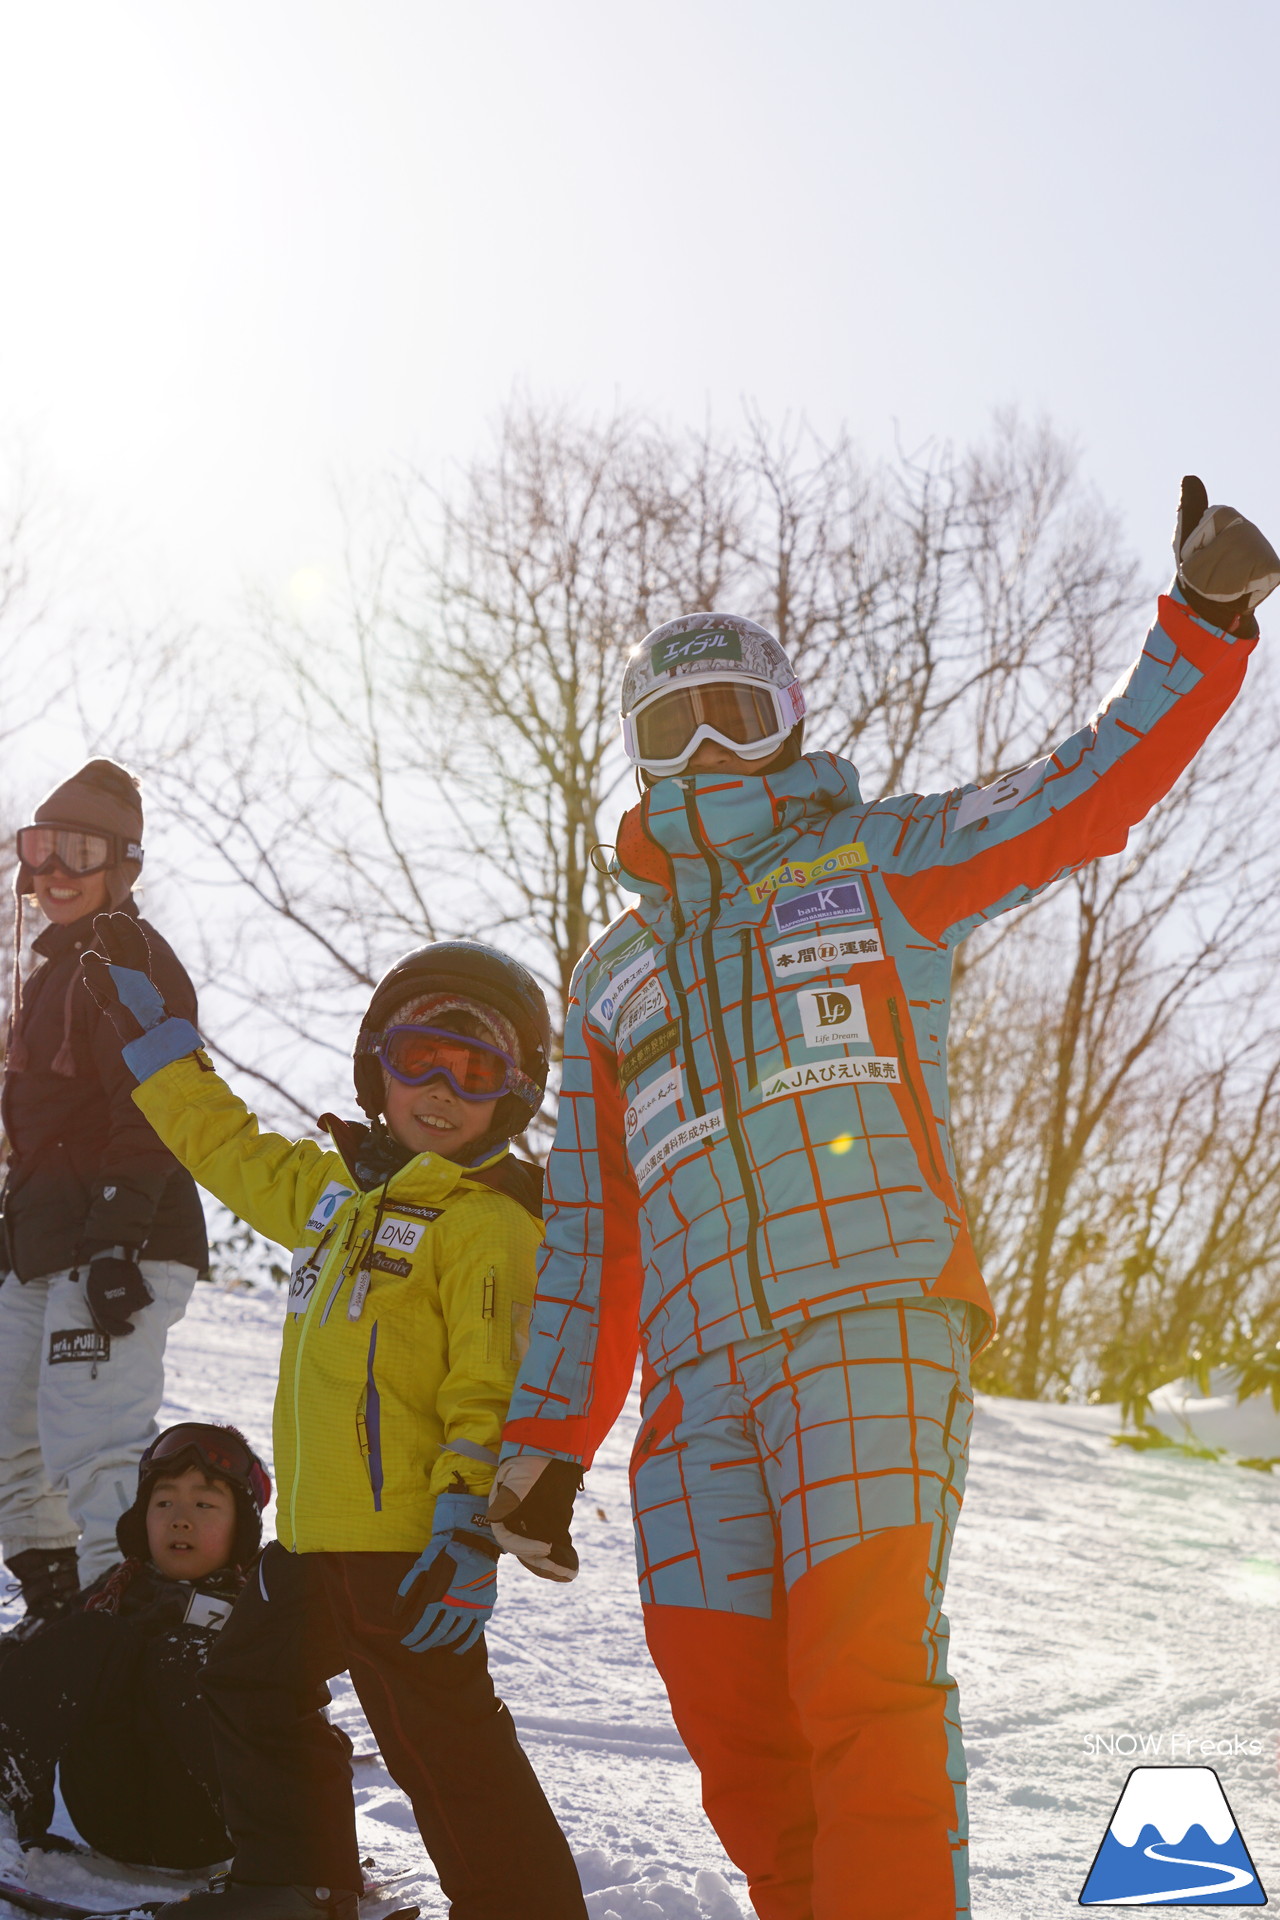 めもるホールディングス presents プロスキーヤー・井山敬介さんと行く『雪育ツアー』in ダイナスティスキーリゾート